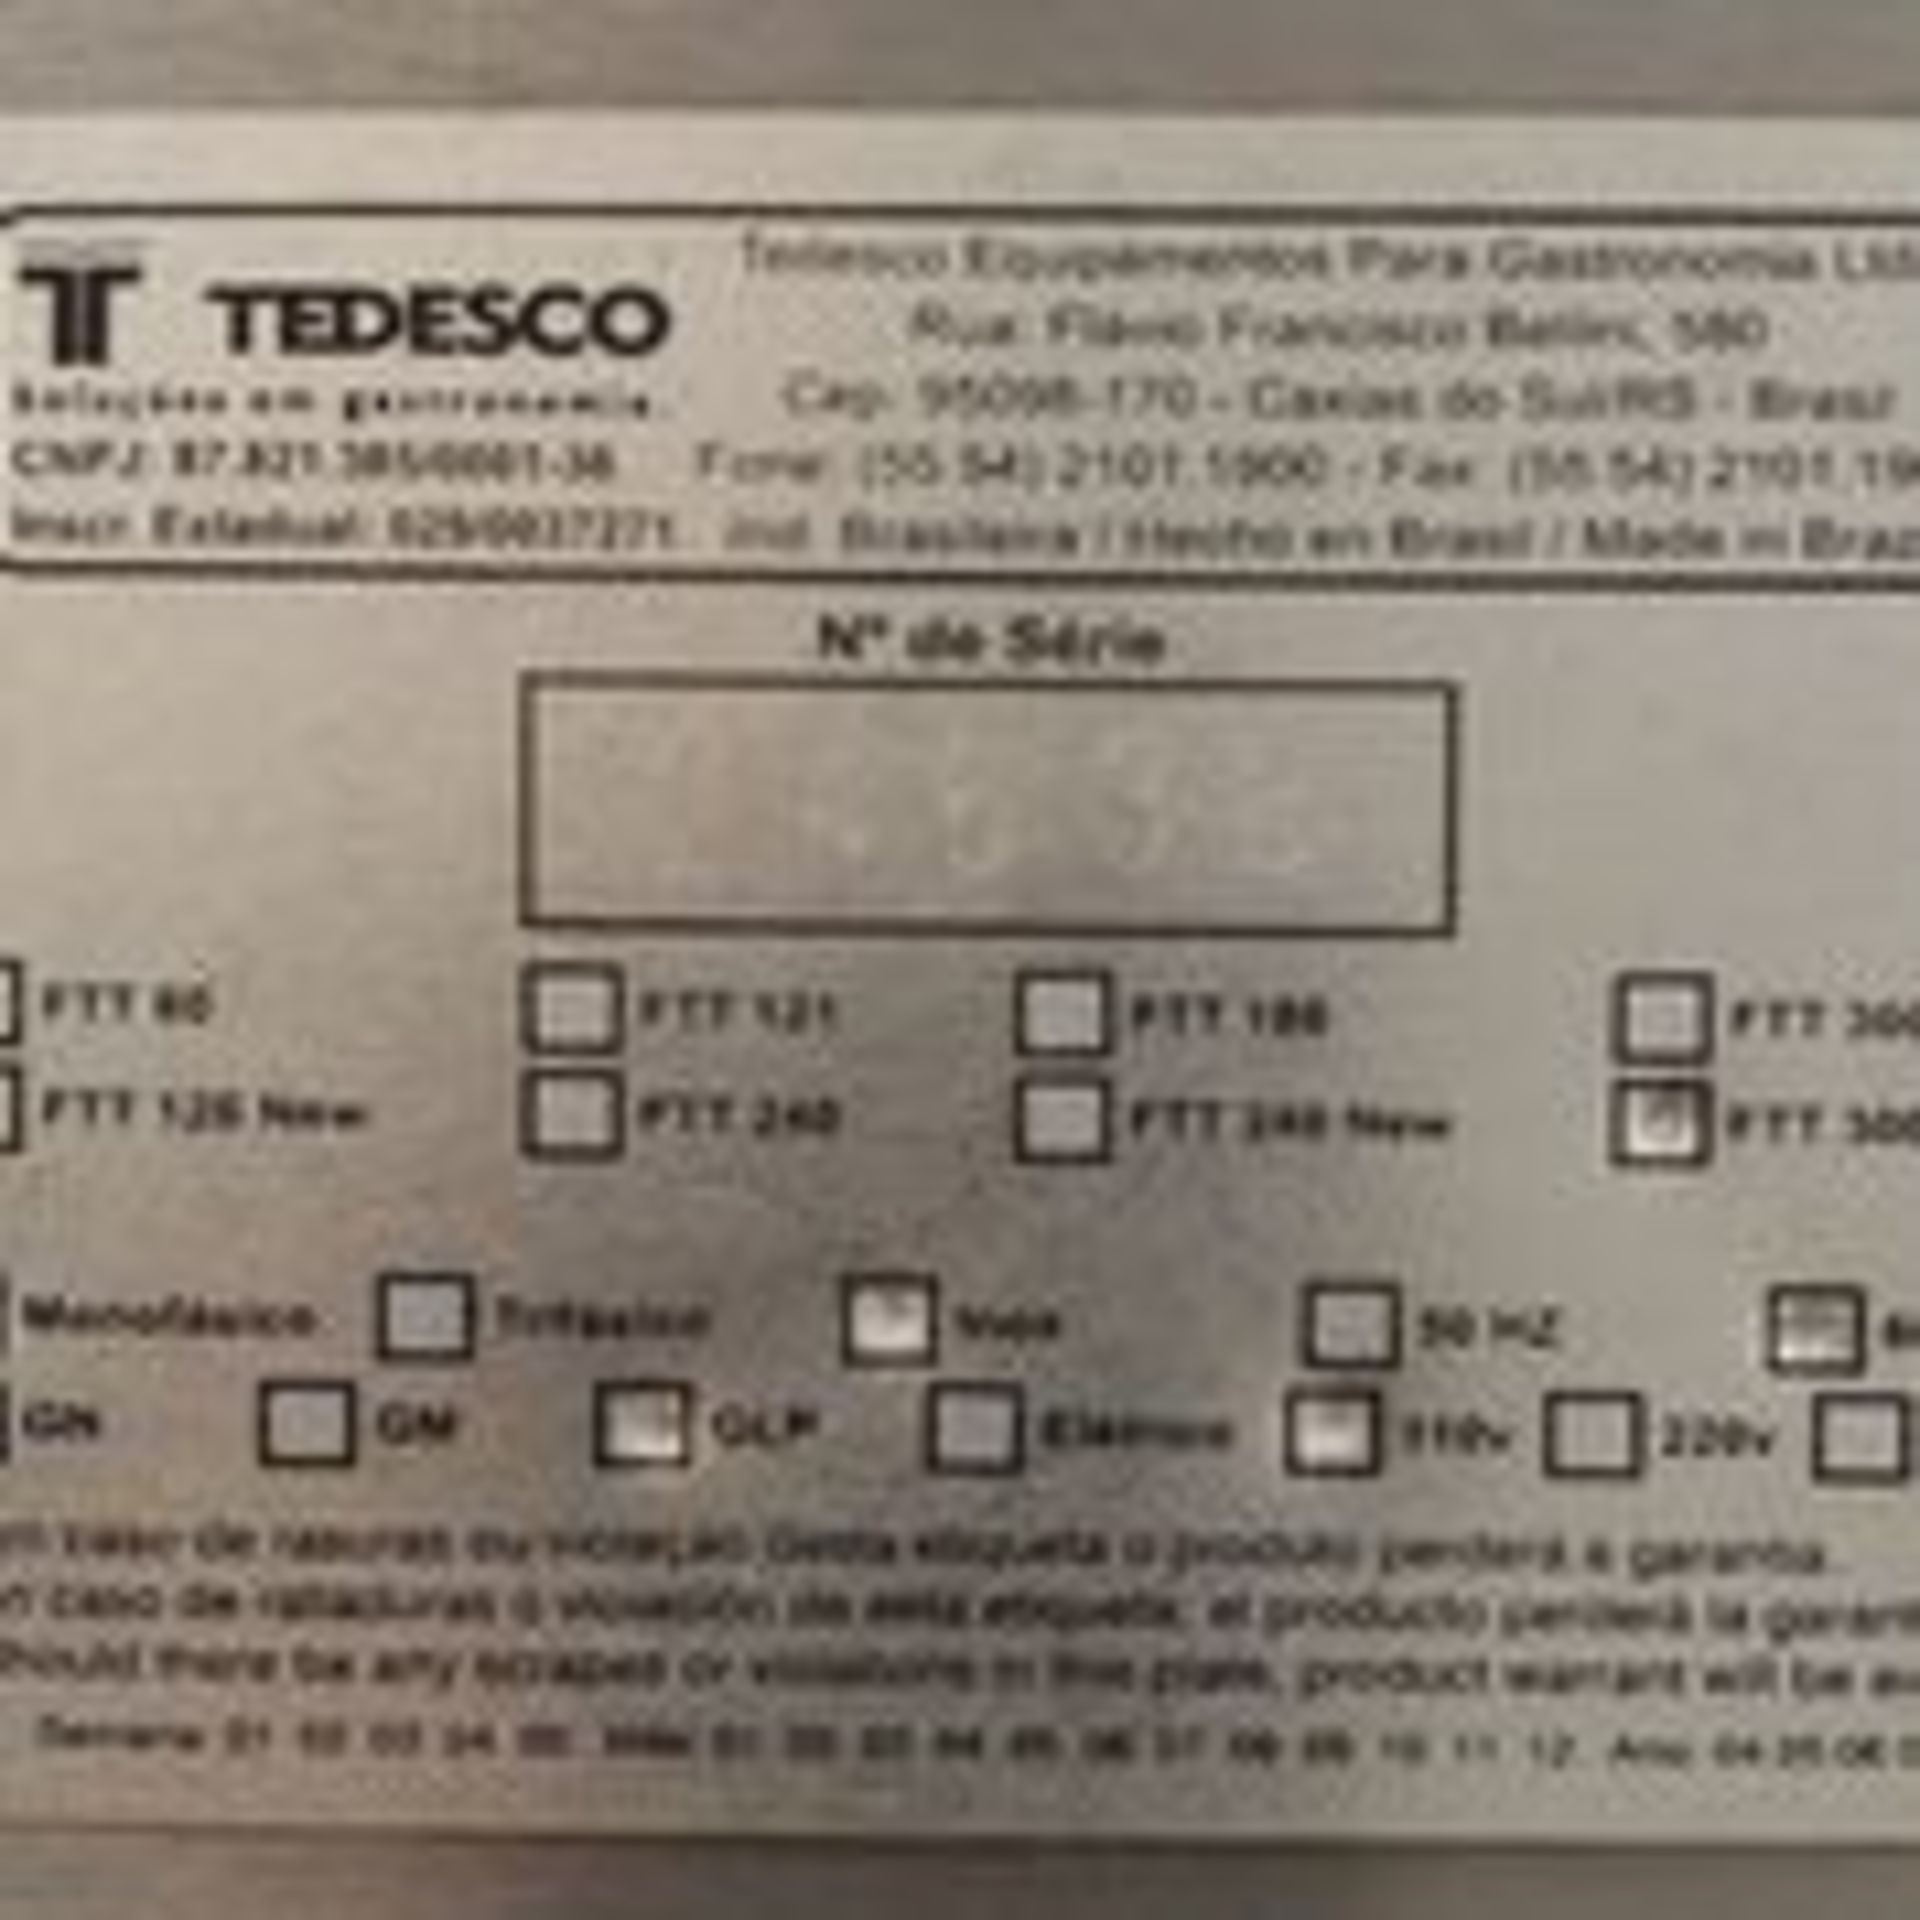 New Tedesco Covection oven, Model: FTT 300 NEW, Serial: 24638, Energy: 110V, 60Hz, 1ph, Material: - Image 7 of 7